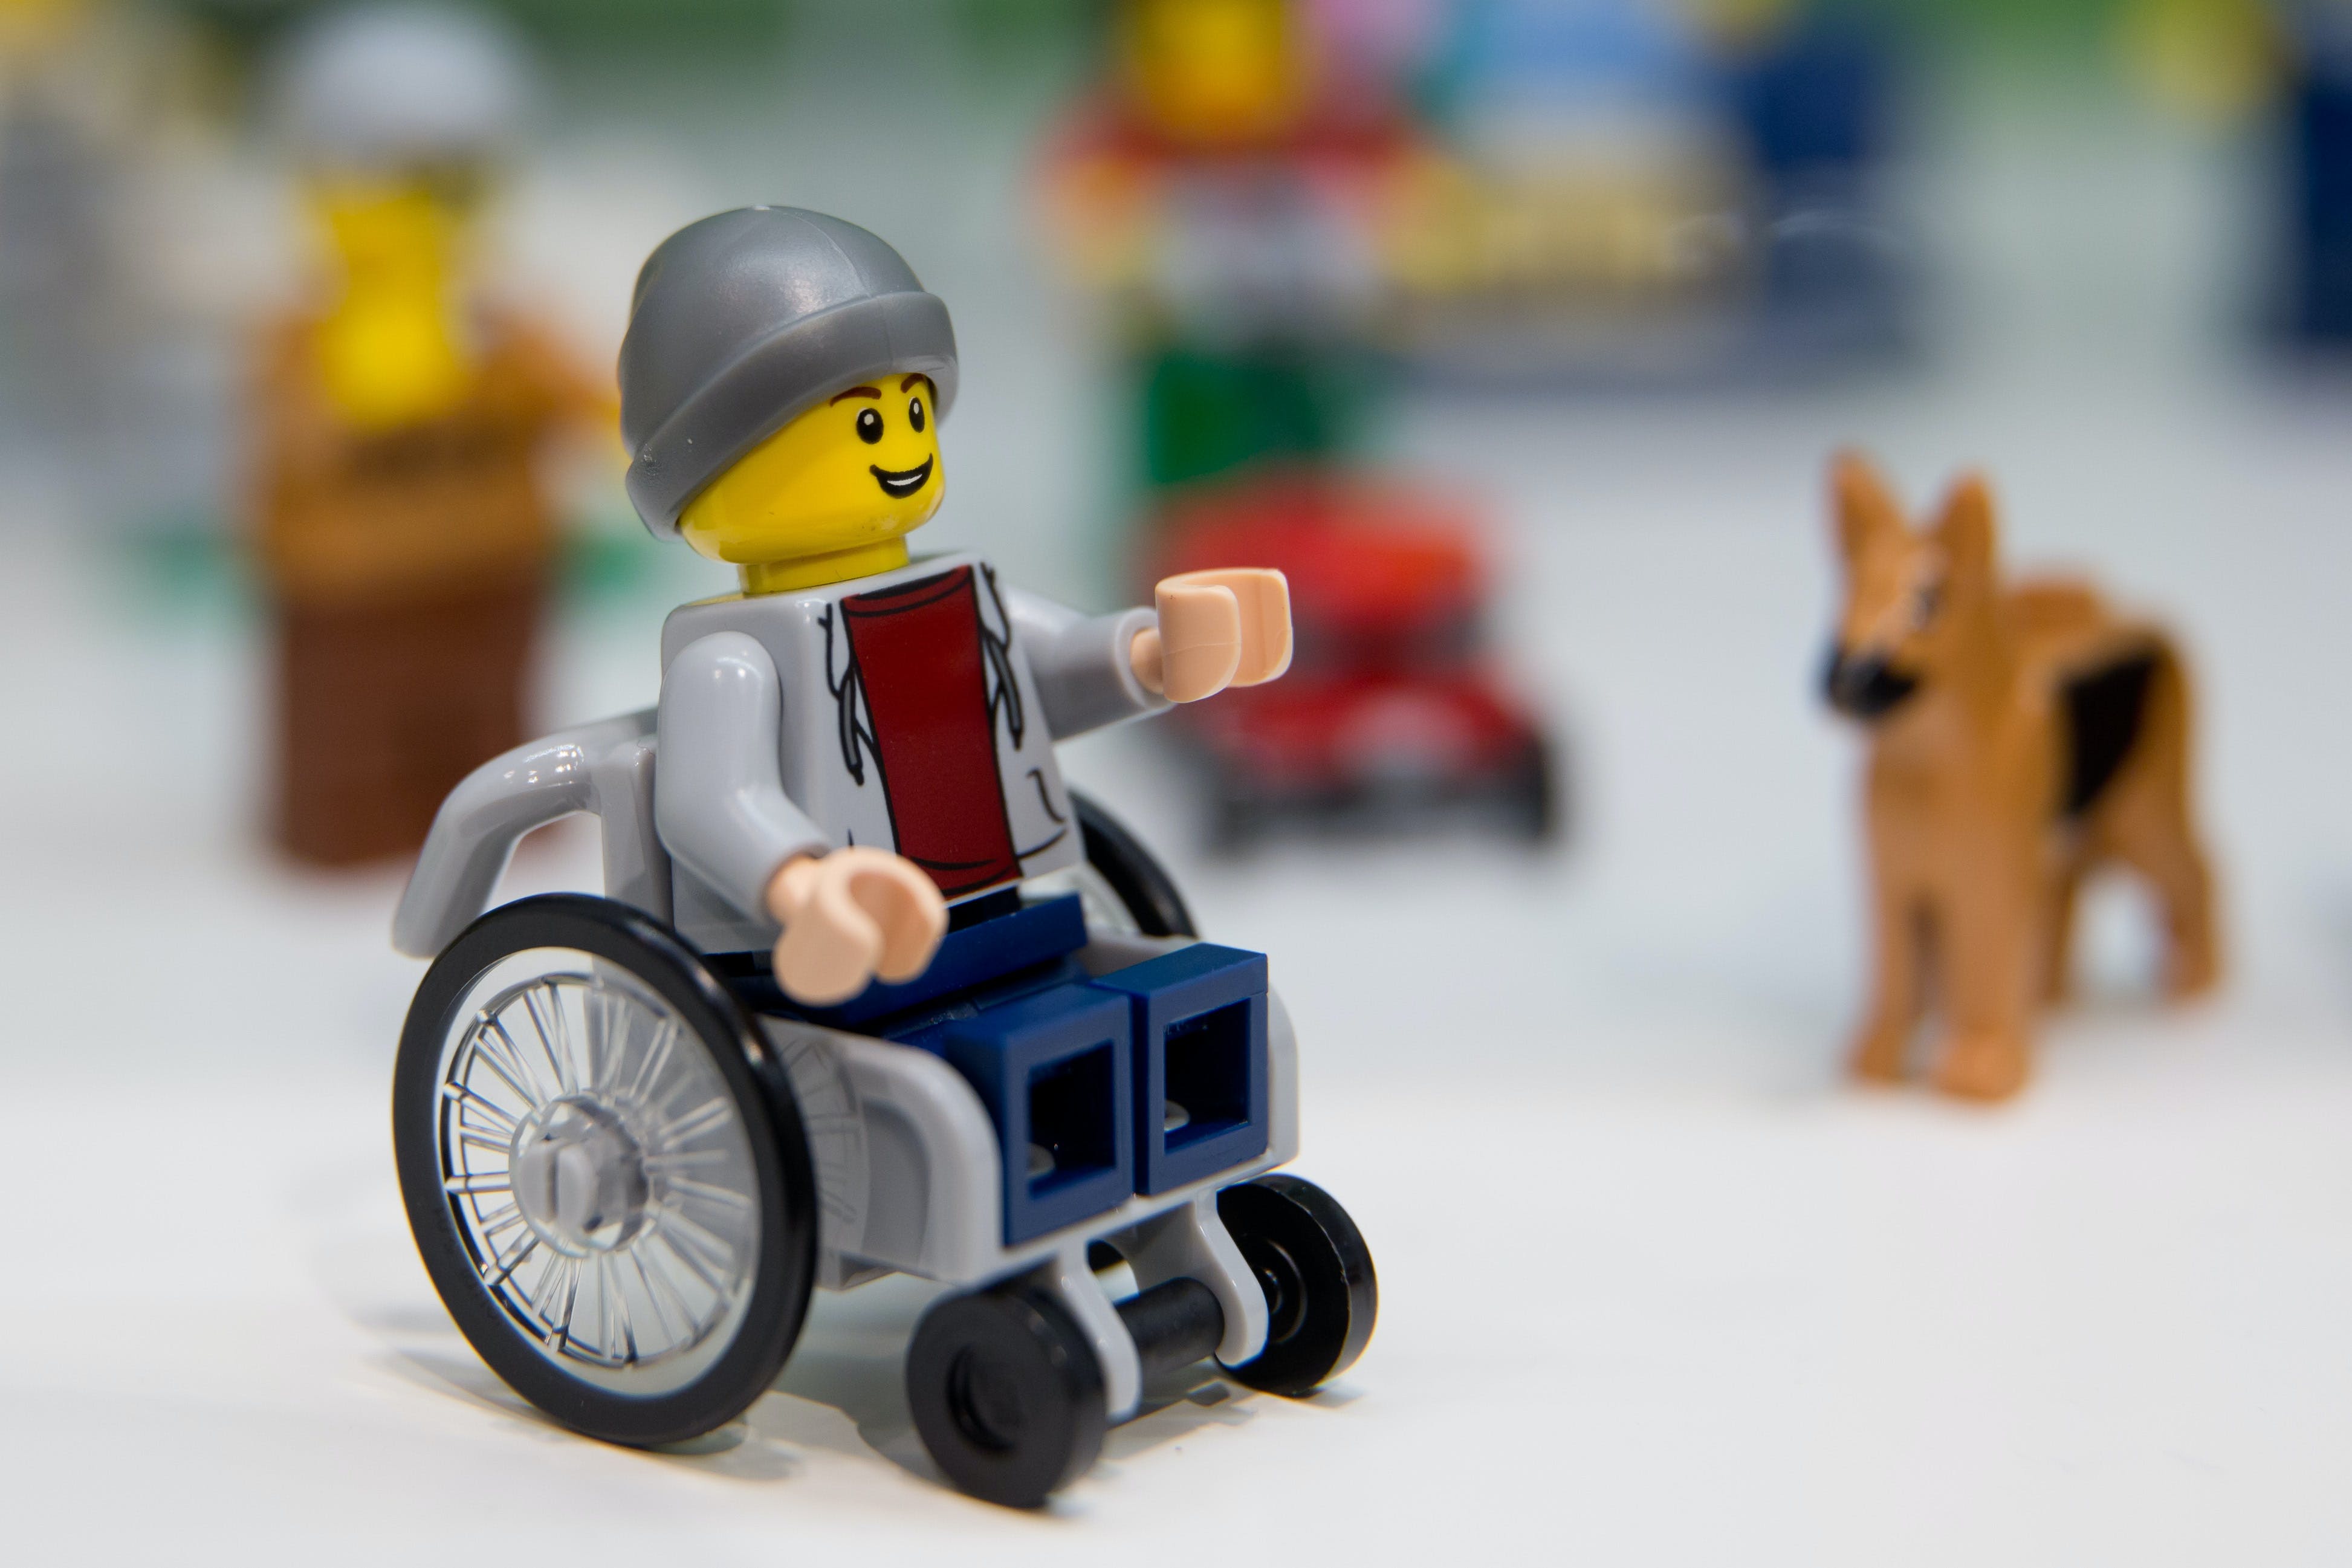 Plástico moldado sob pressão: entenda a tecnologia por trás do Lego -  29/11/2018 - UOL TILT